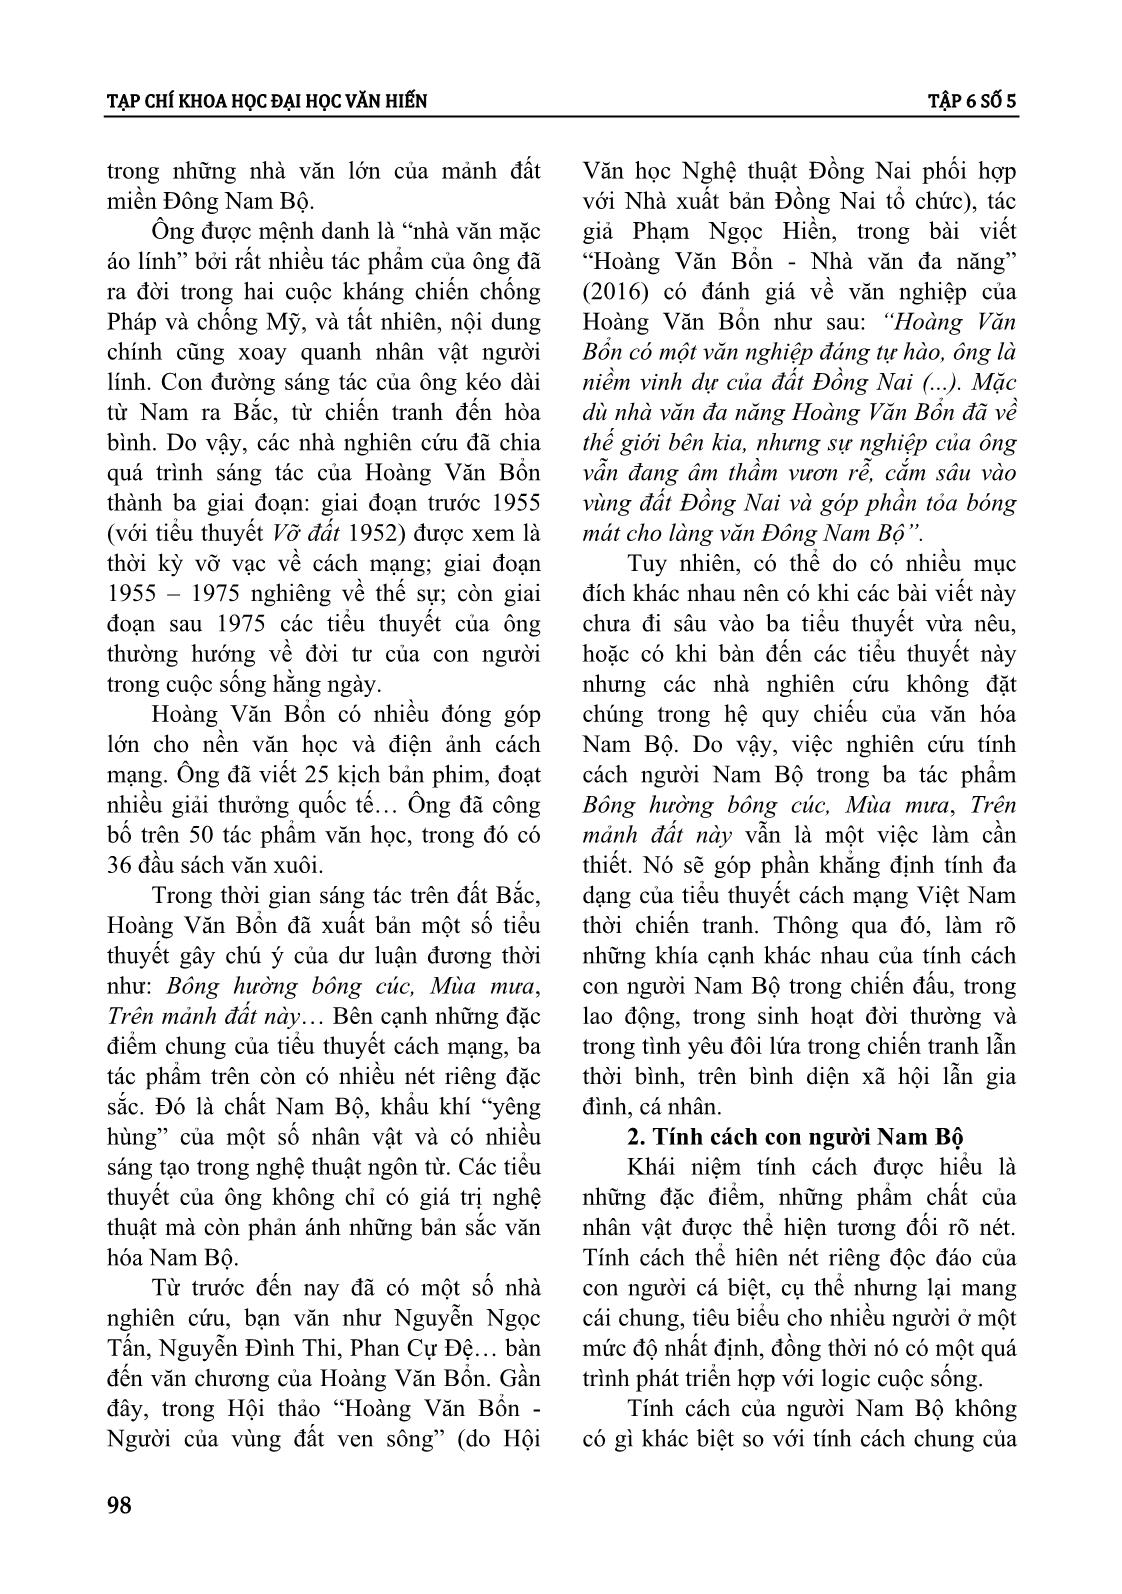 Tính cách con người nam bộ trong tiểu thuyết Hoàng Văn Bổn giai đoạn 1955 - 1975 trang 2